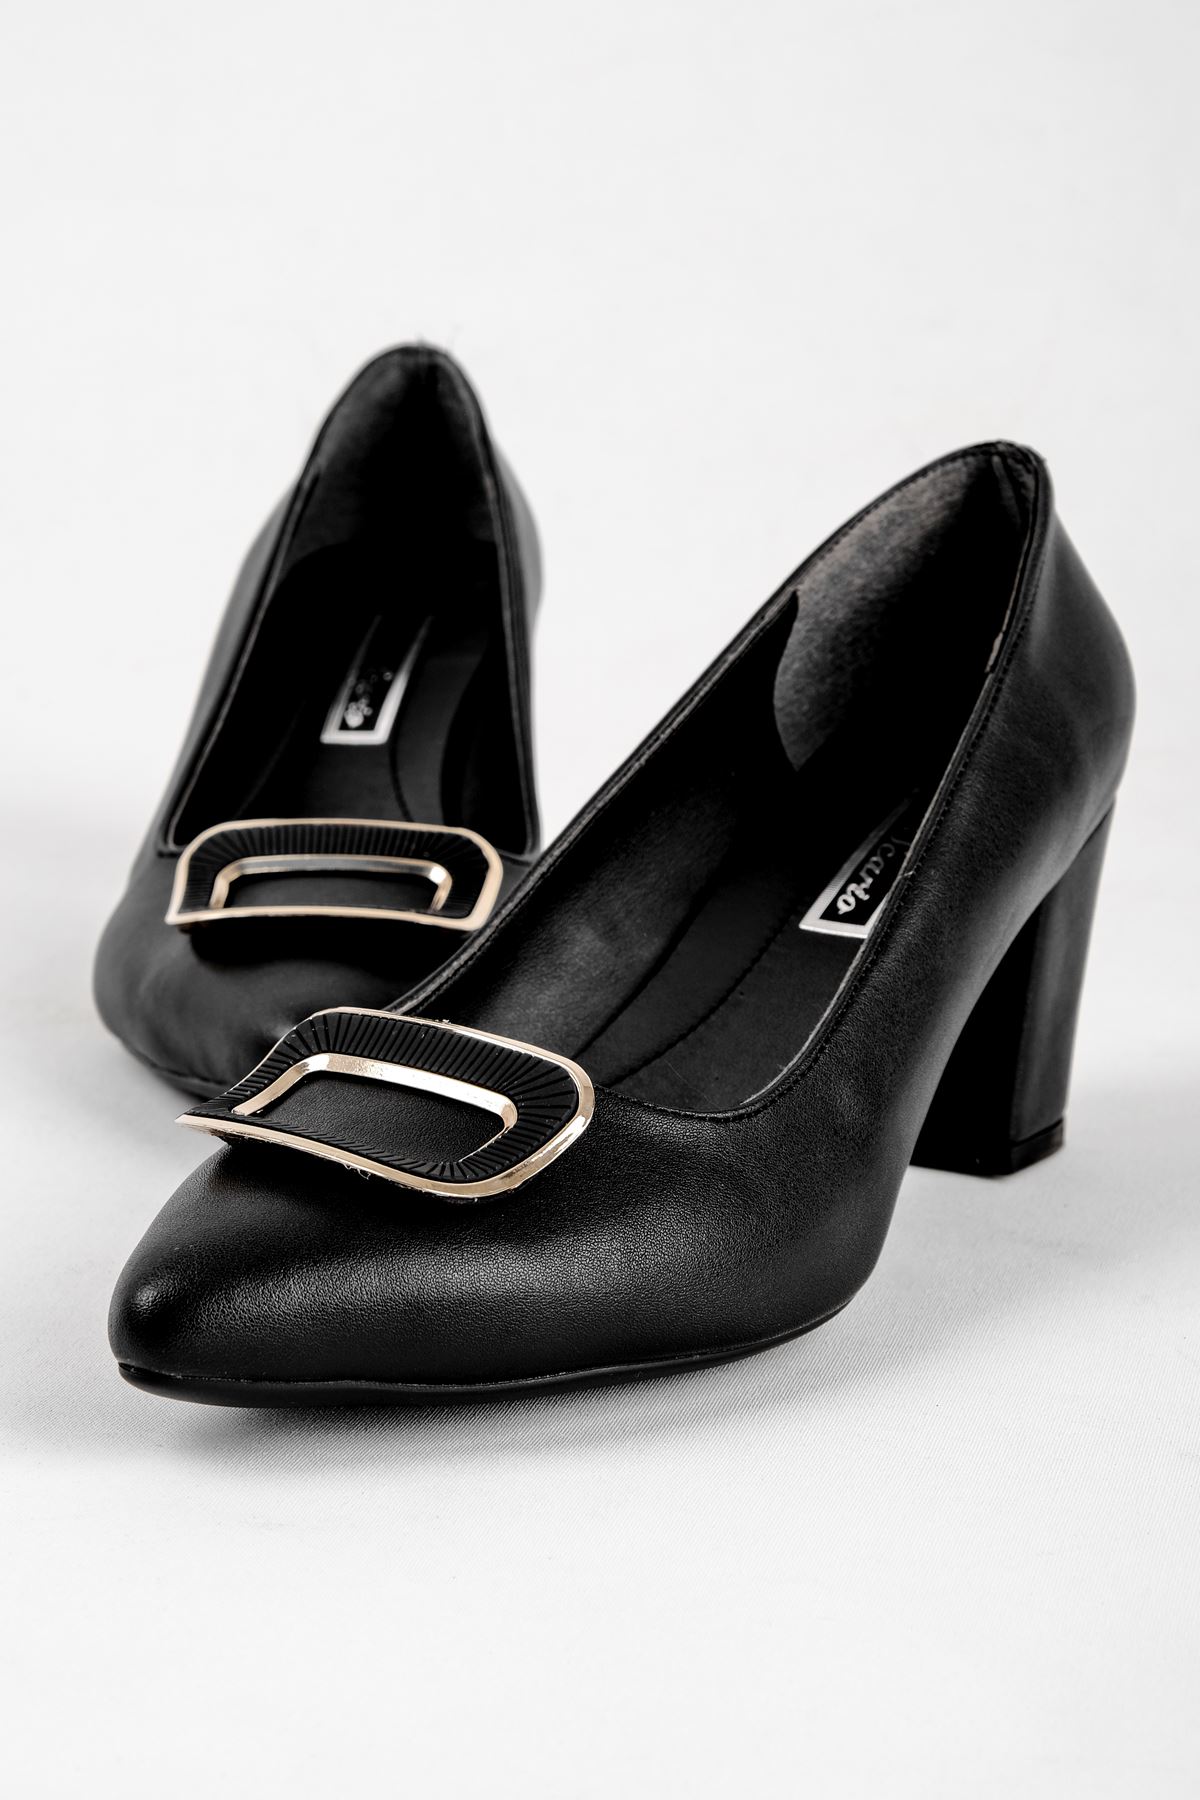 Medan Kadın Topuklu Ayakkabı Toka Detaylı-siyah